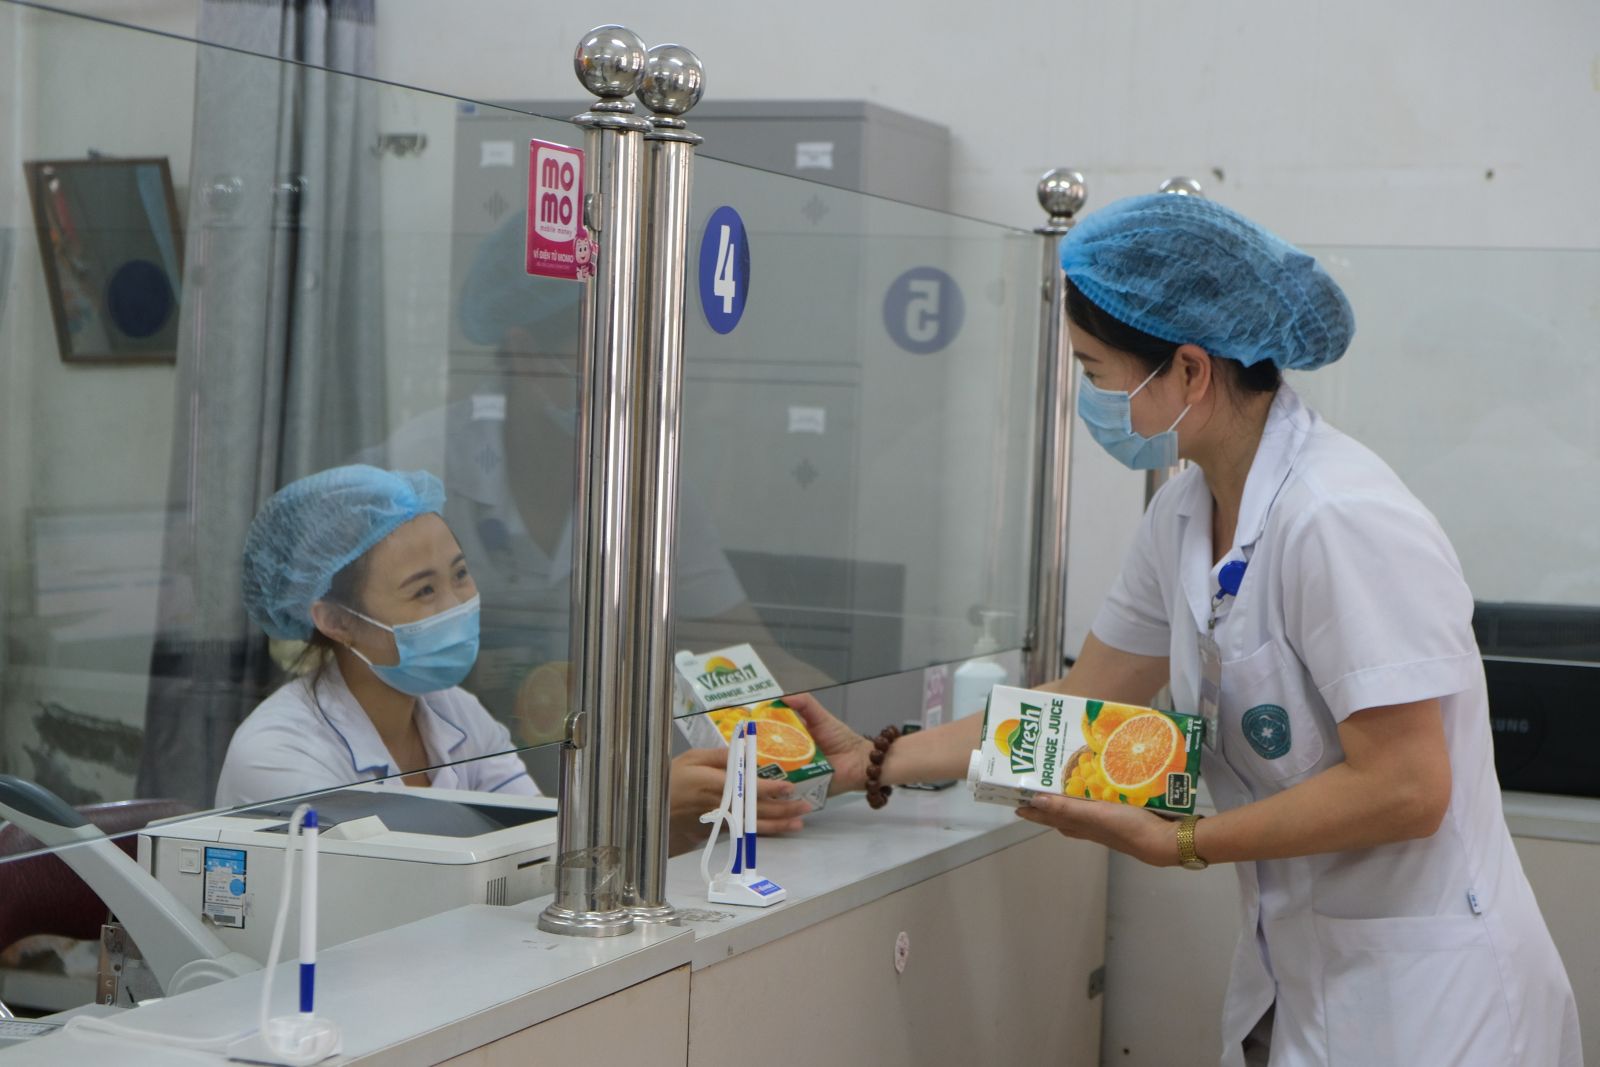 Trước đó, Vinamilk cũng đã dành gần 200.000 sản phẩm để tiếp sức lực lượng tuyến đầu tại 3 địa phương Hà Nội, Bắc Ninh, Hà Nam